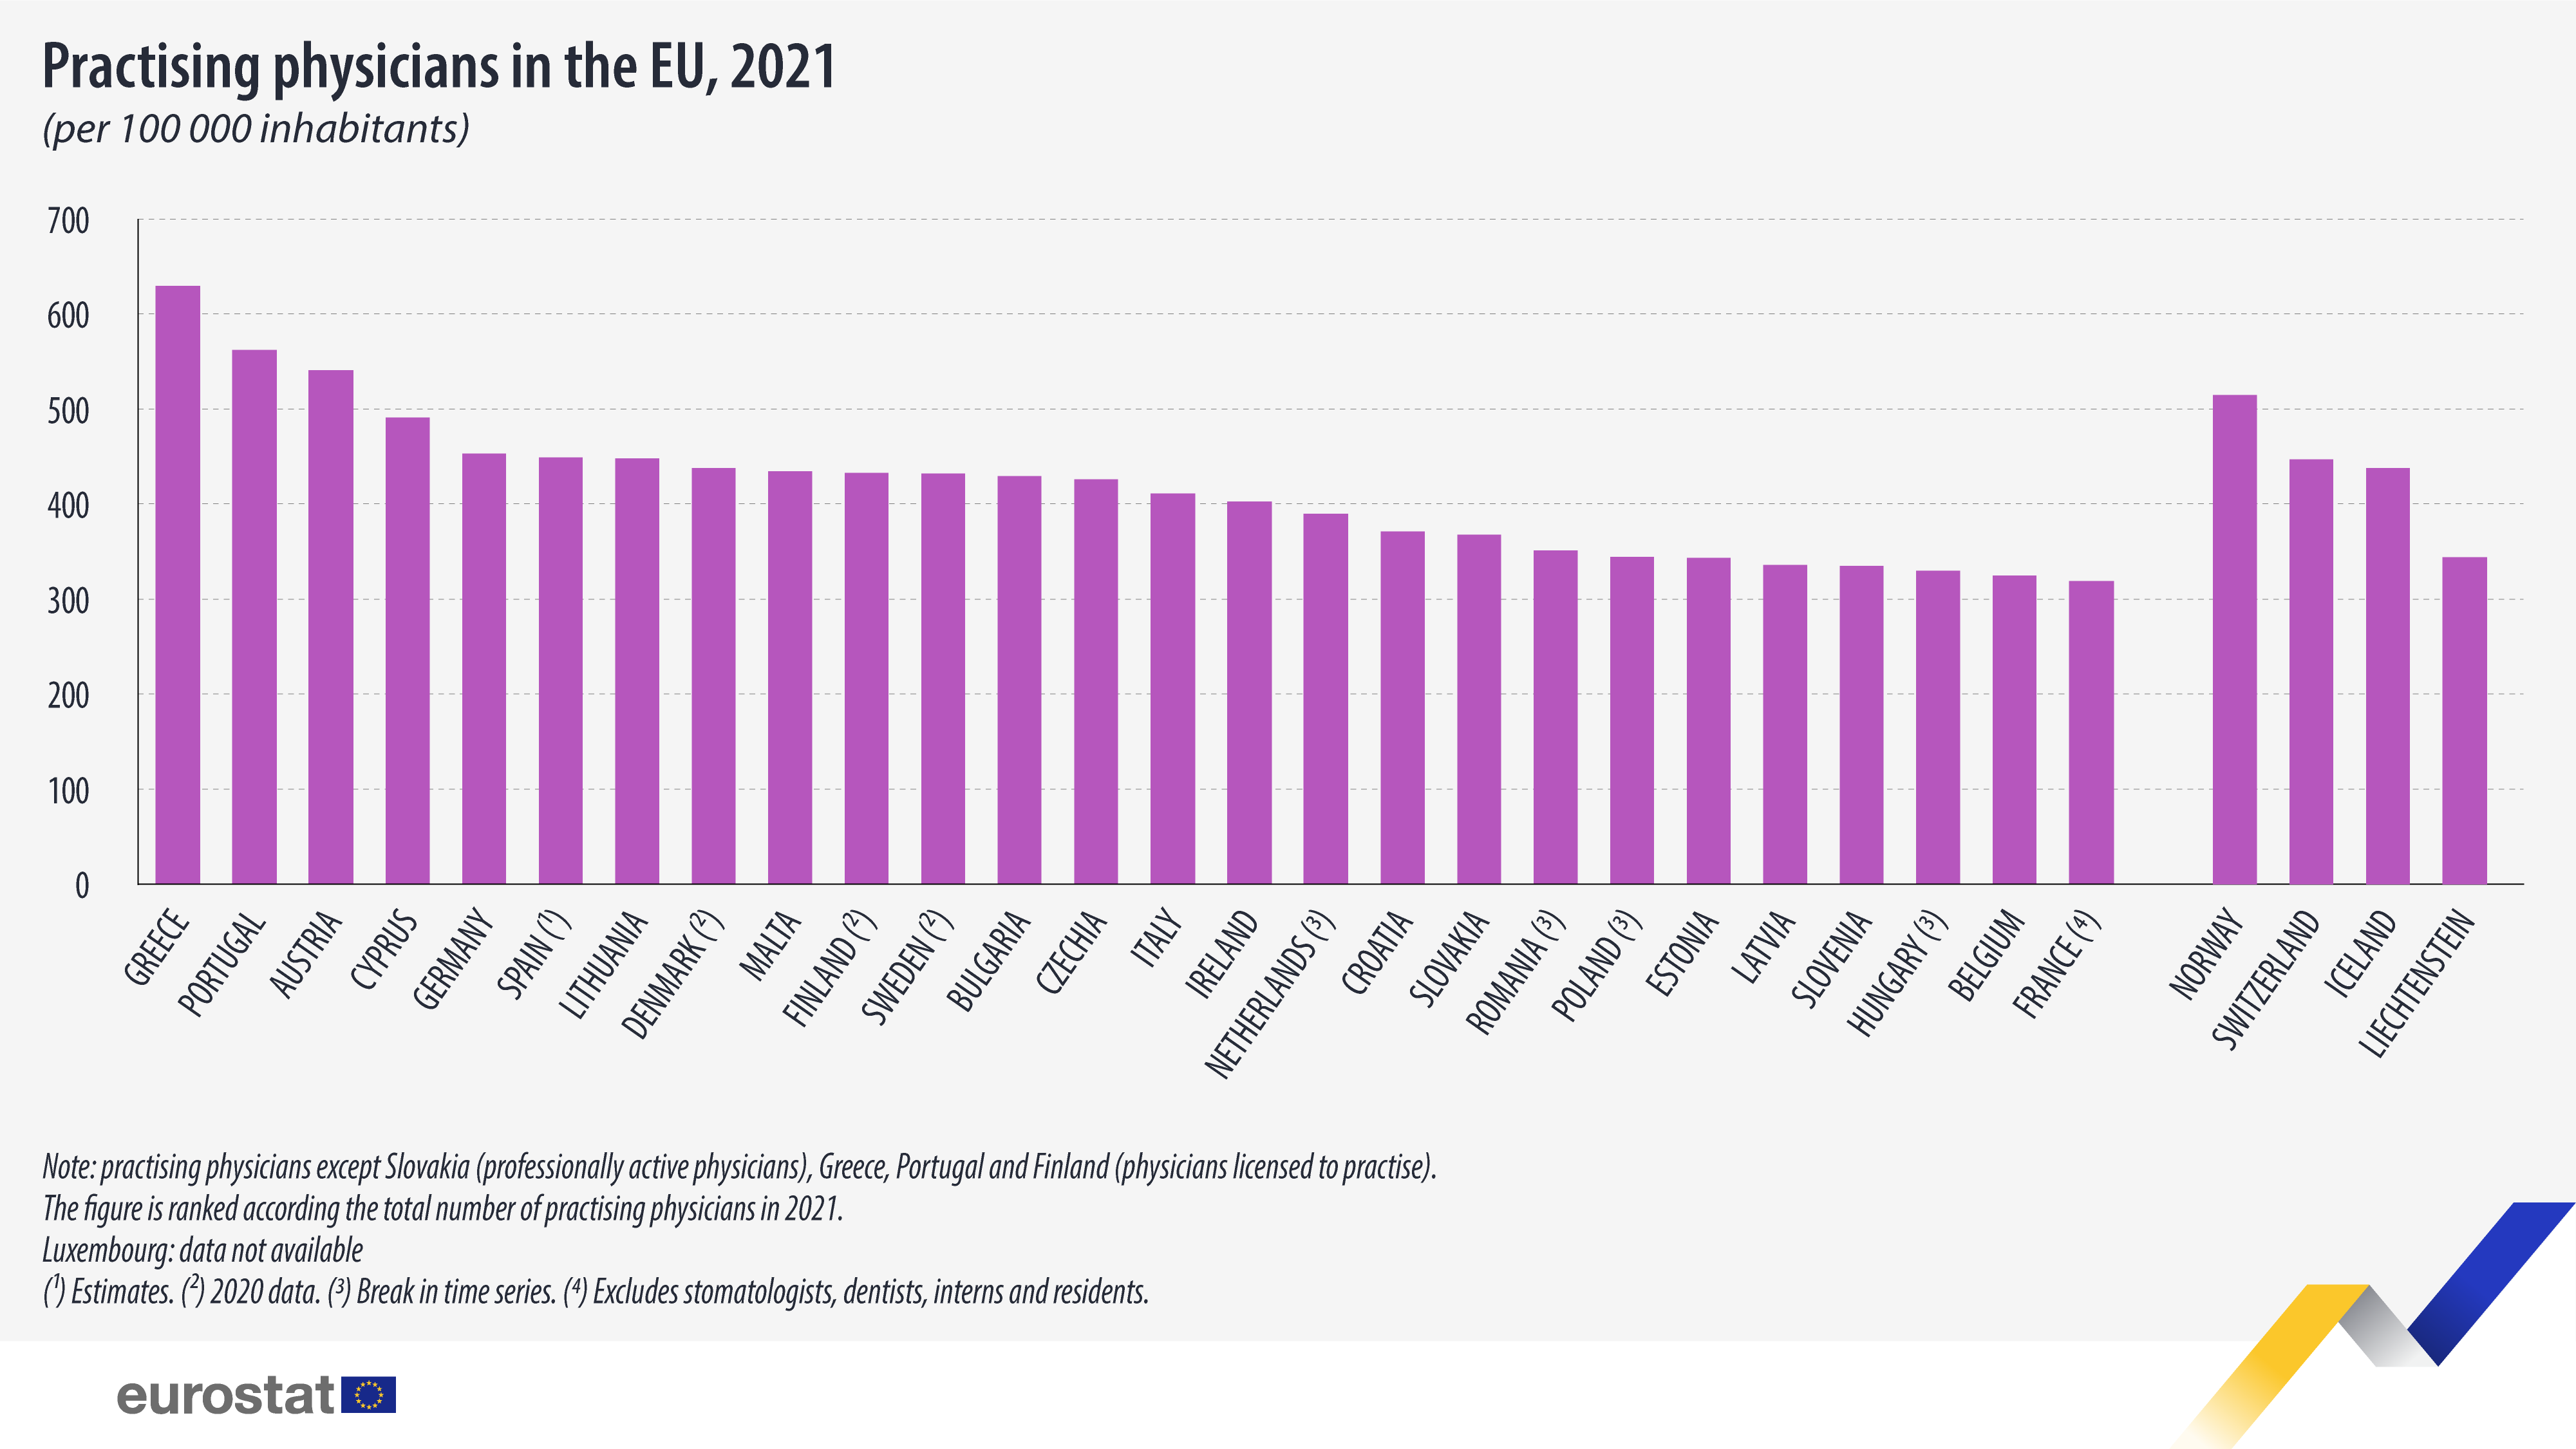 Слупковая дыяграма: практыкуючыя лекары ў ЕС, на 100 000 жыхароў, 2021 г.